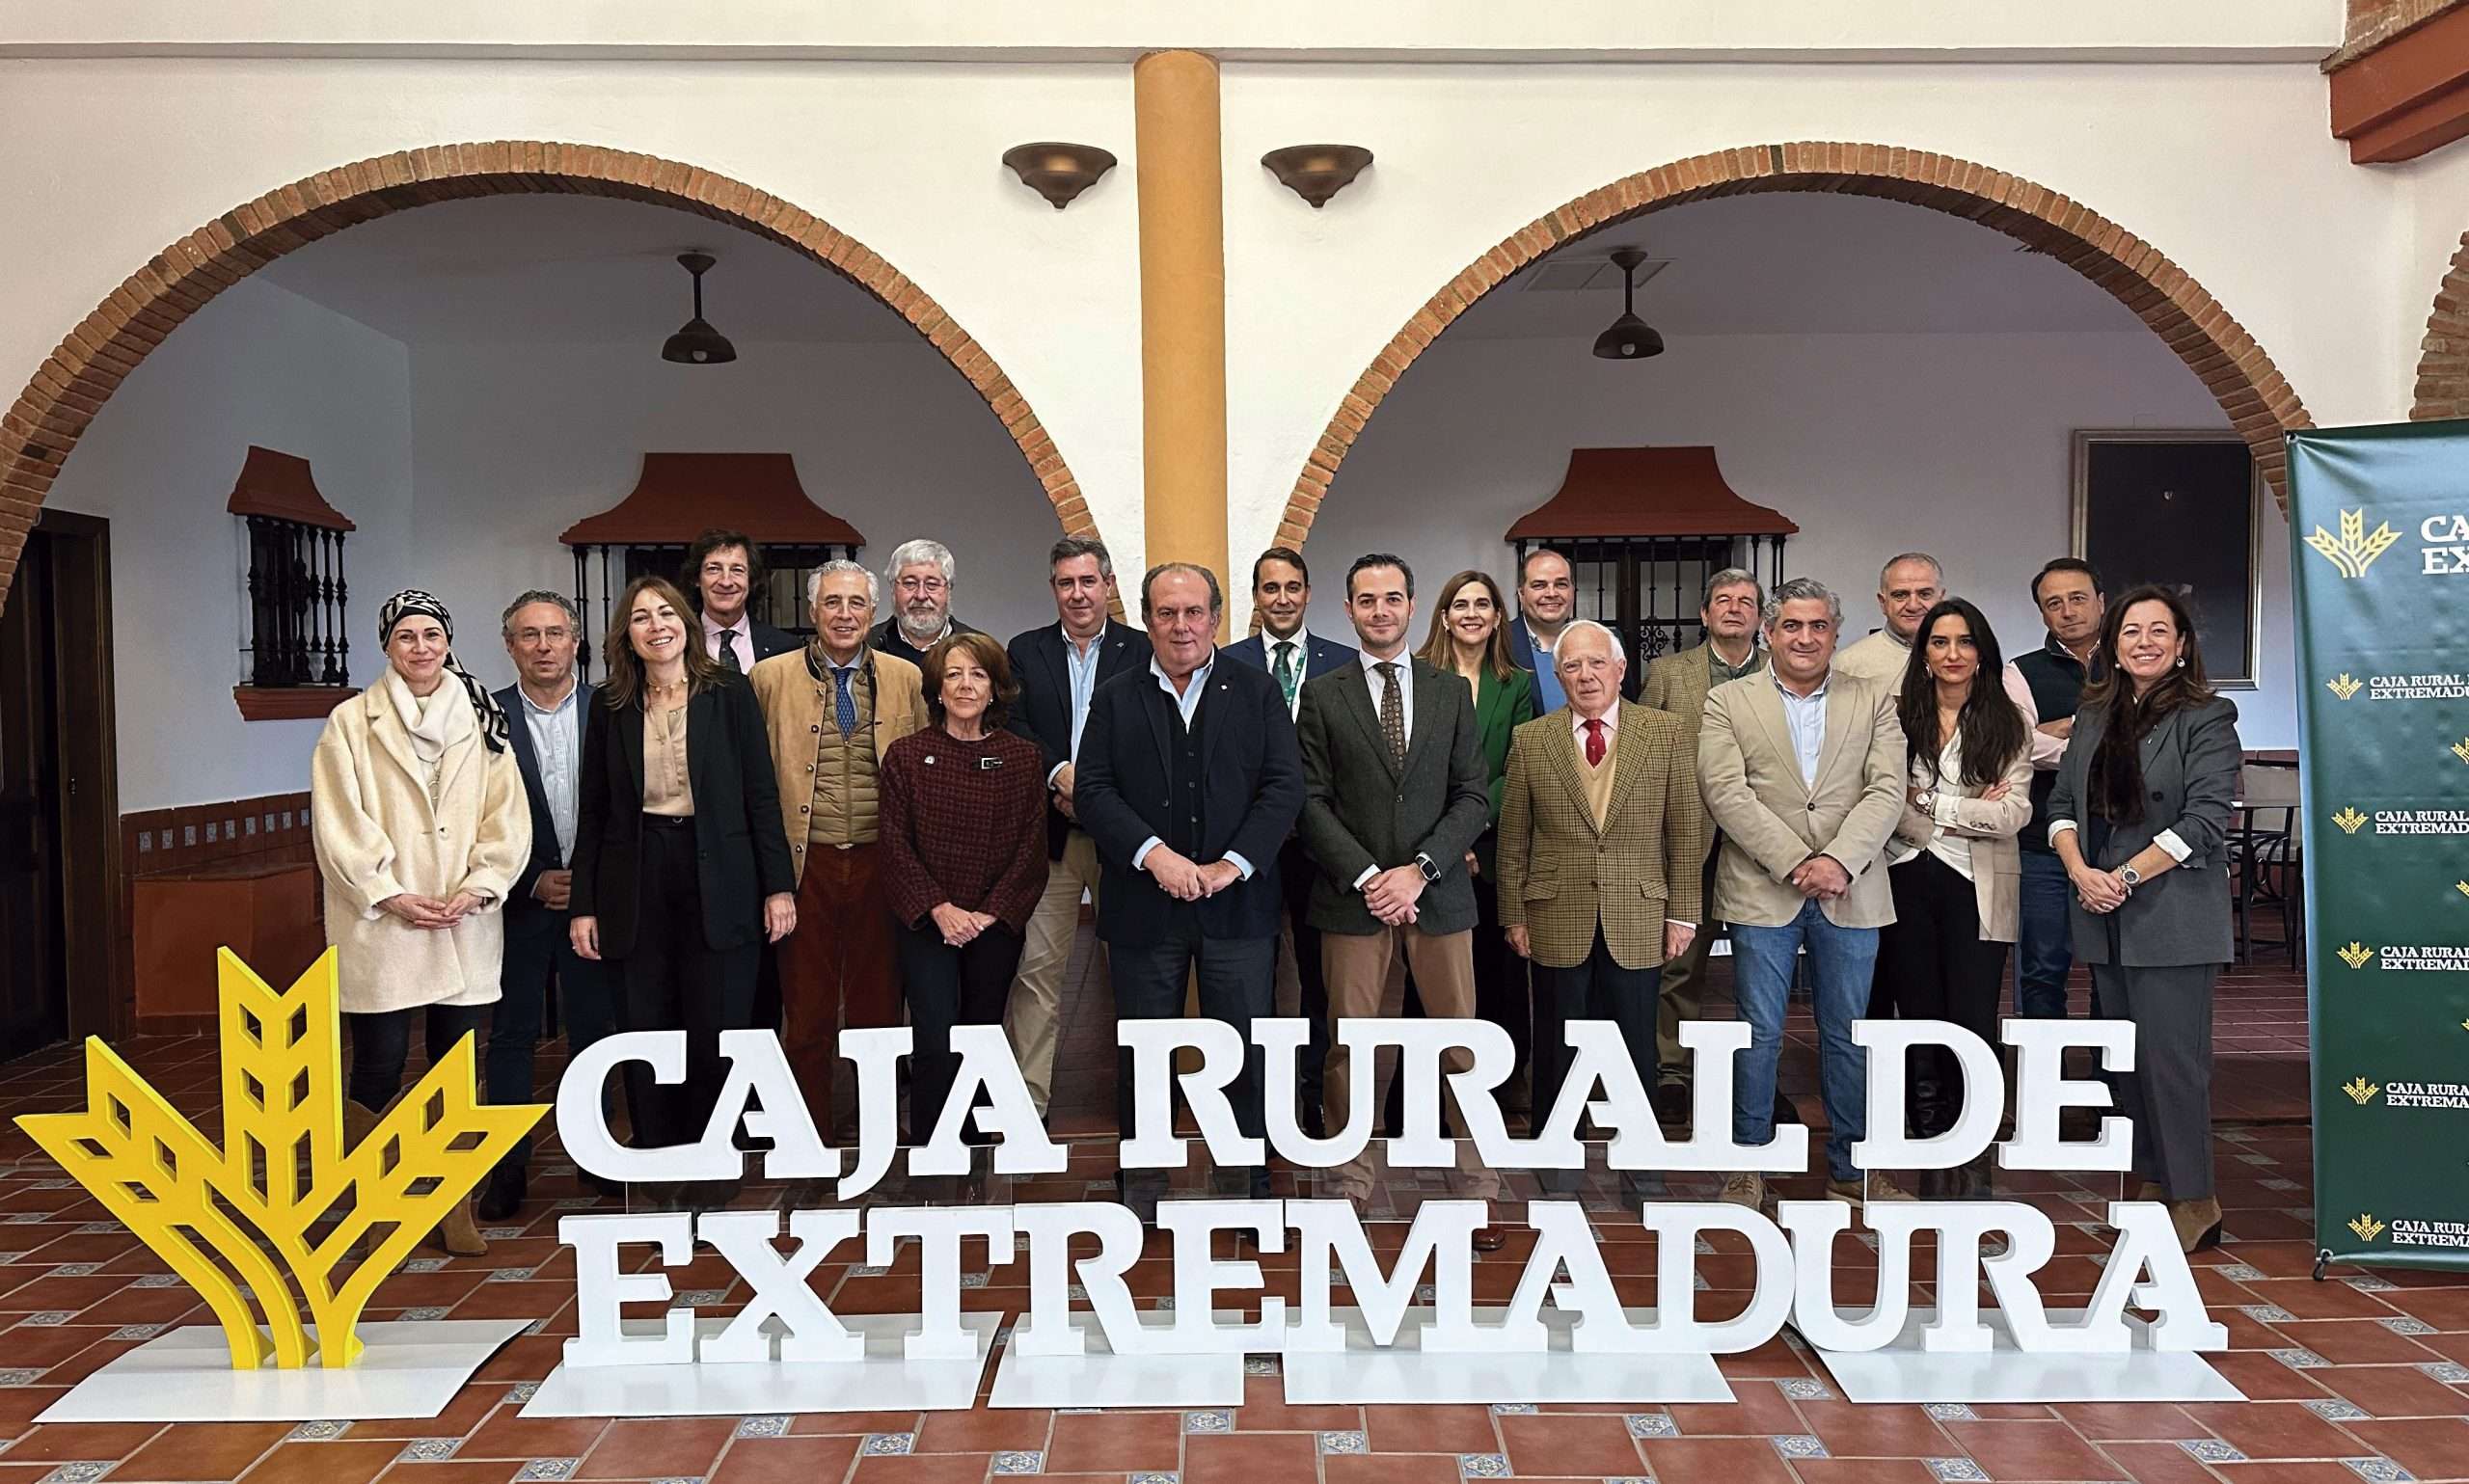 El sector ganadero de la región celebra su encuentro anual auspiciado por Caja Rural de Extremadura